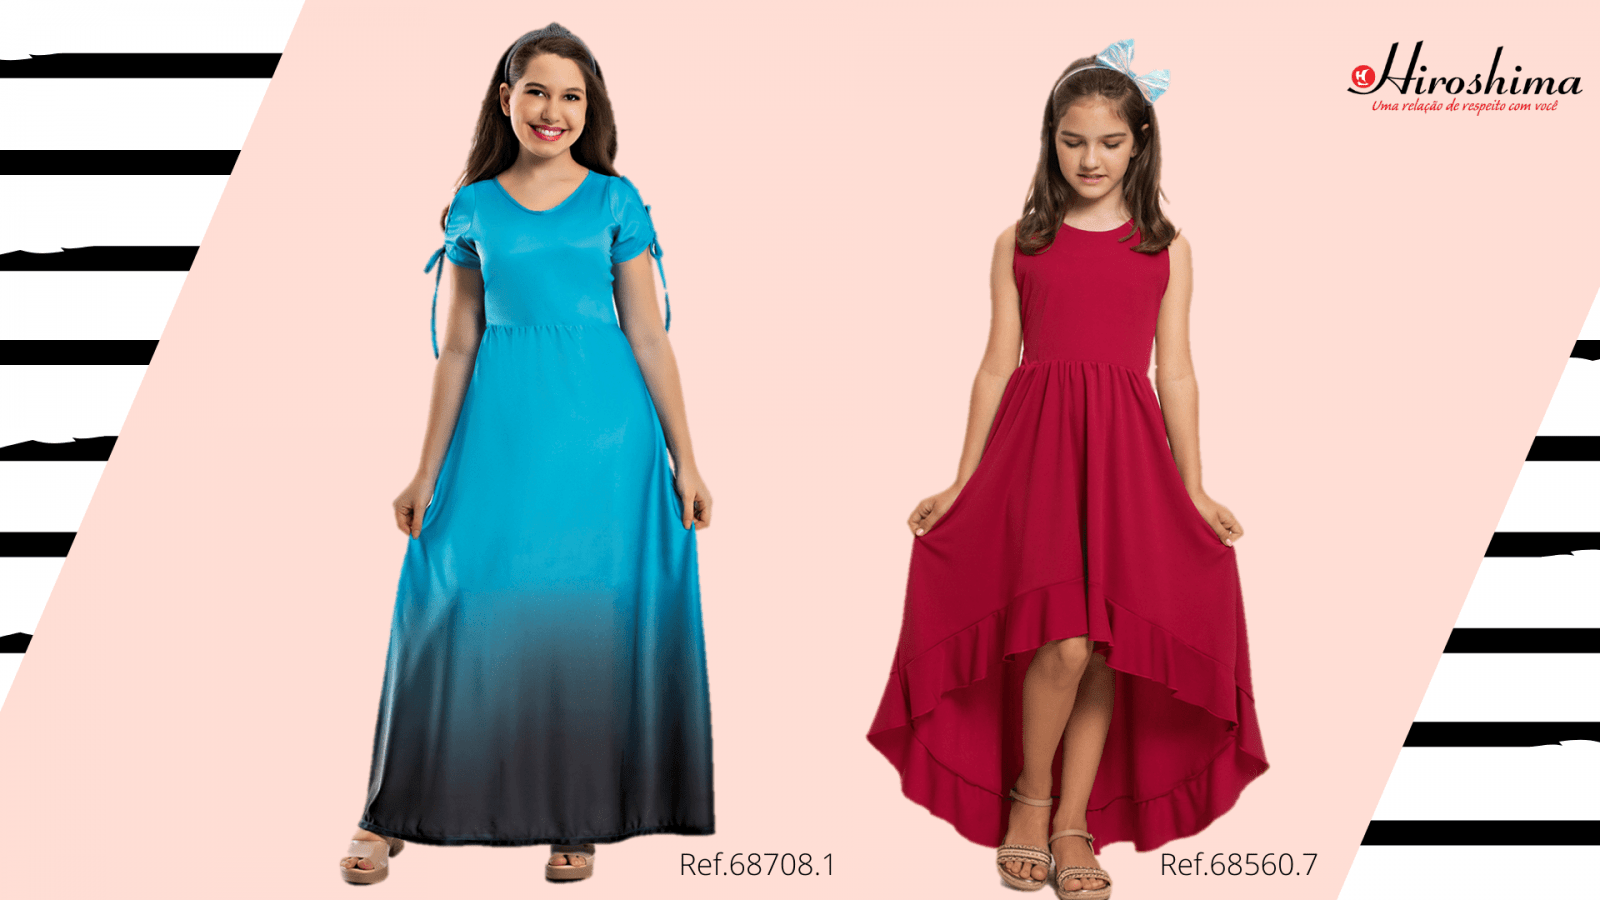 Moda infanto-juvenil: coleção 2021 - vestido longo azul, e vestido longo vermelho, Ref. 68708.1 e Ref. 68560.7